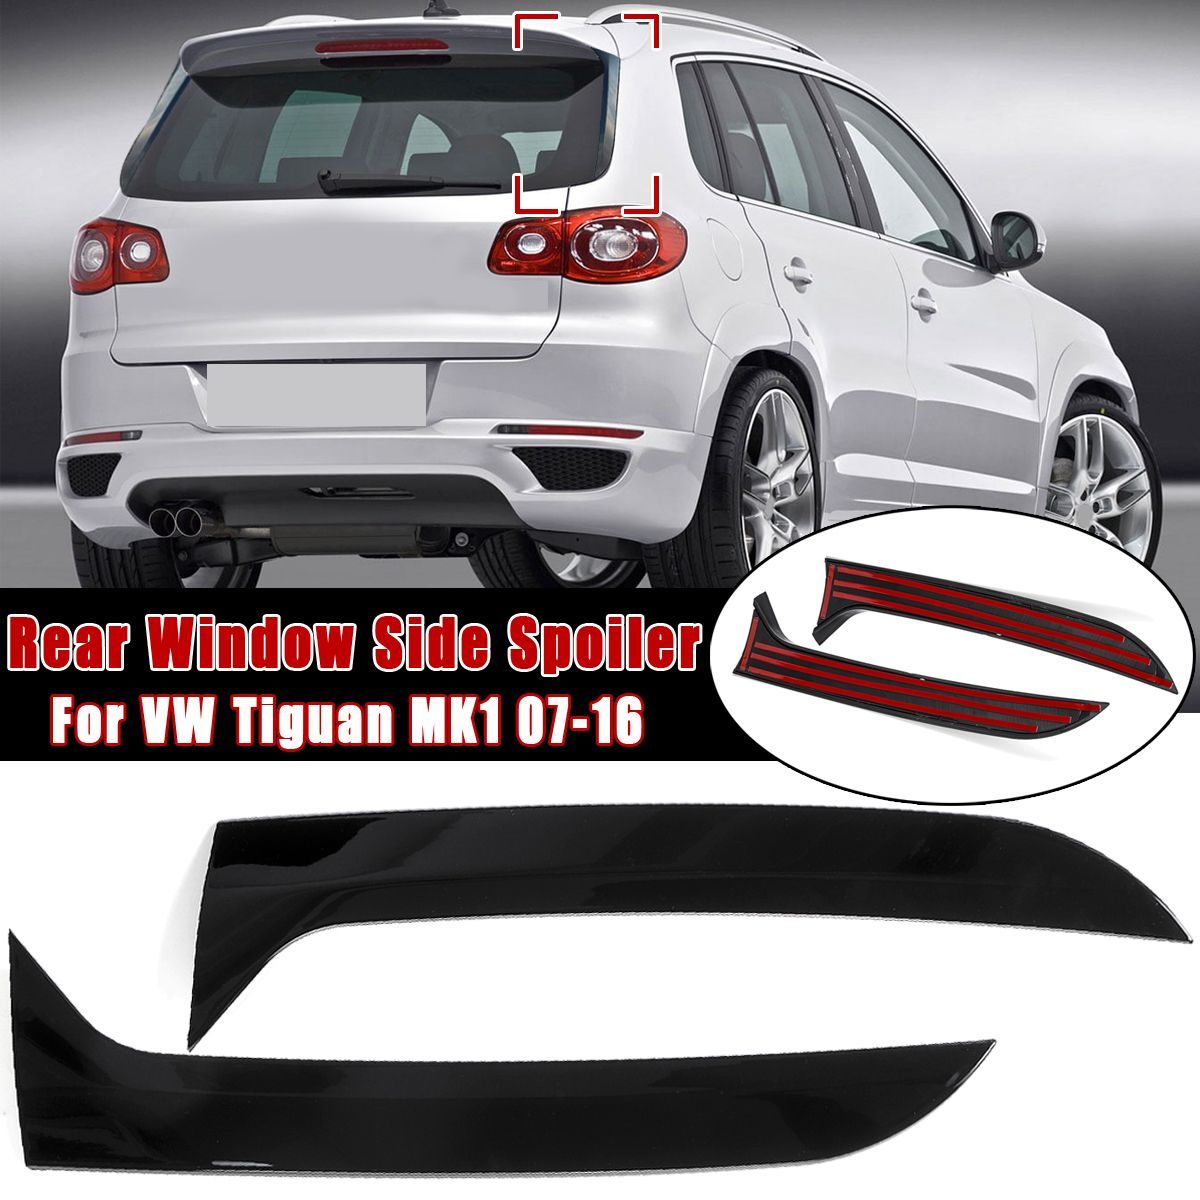 2Pcs-Car-Rear-Window-Side-Spoiler-Wing-Canard-Canards-Splitter-For-VW-Tiguan-MK1-2007-2016-1645397